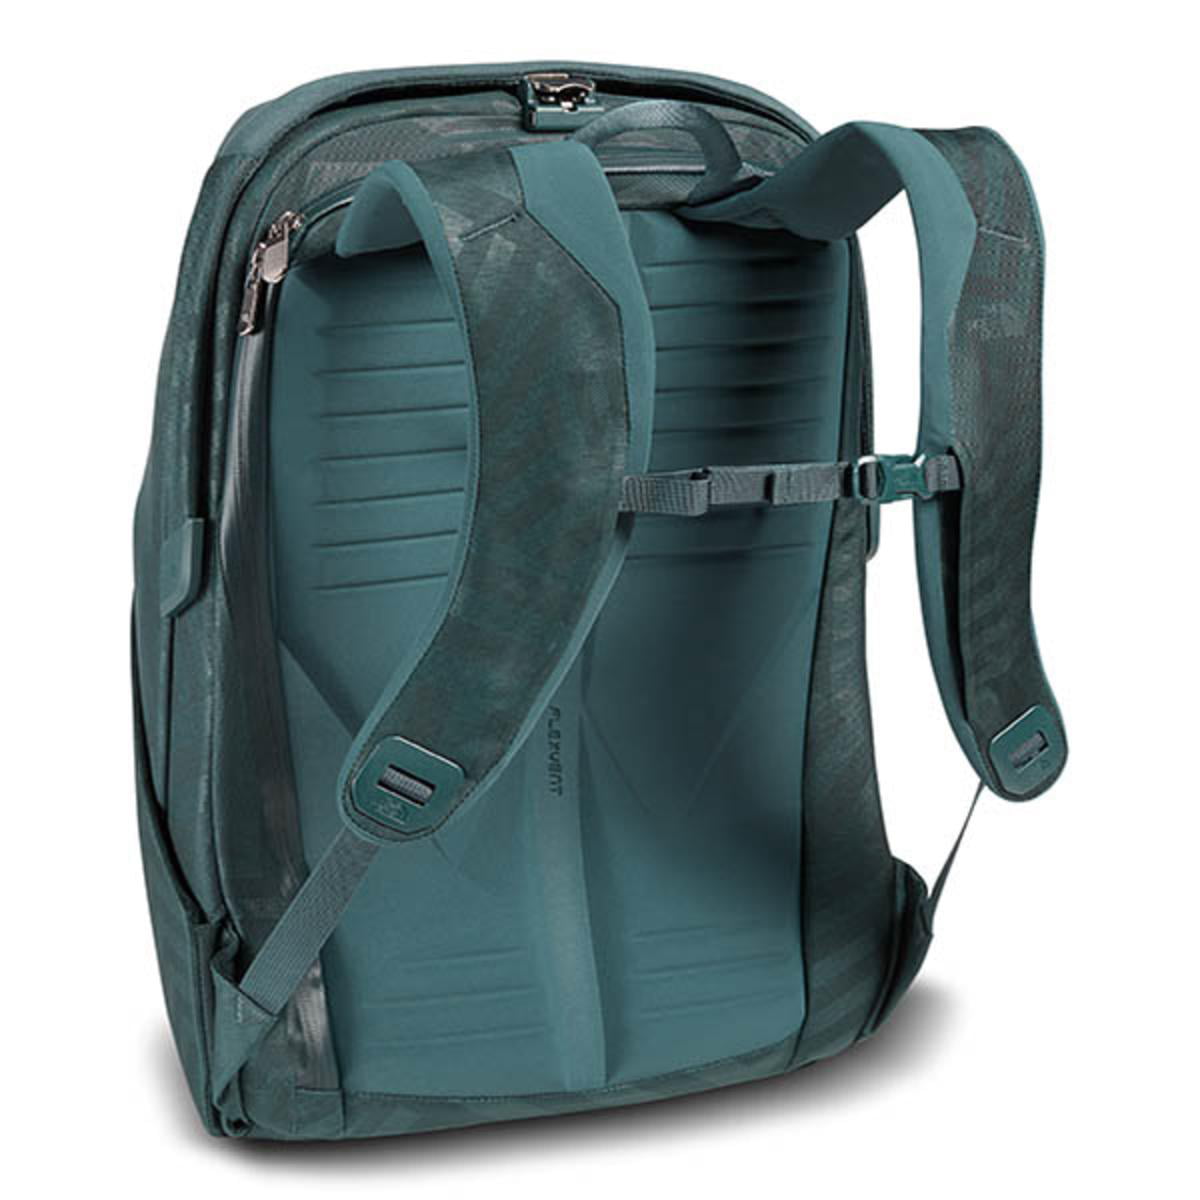 Calamiteit samenwerken jacht The North Face Access 22L Backpack Bag One Size - Walmart.com